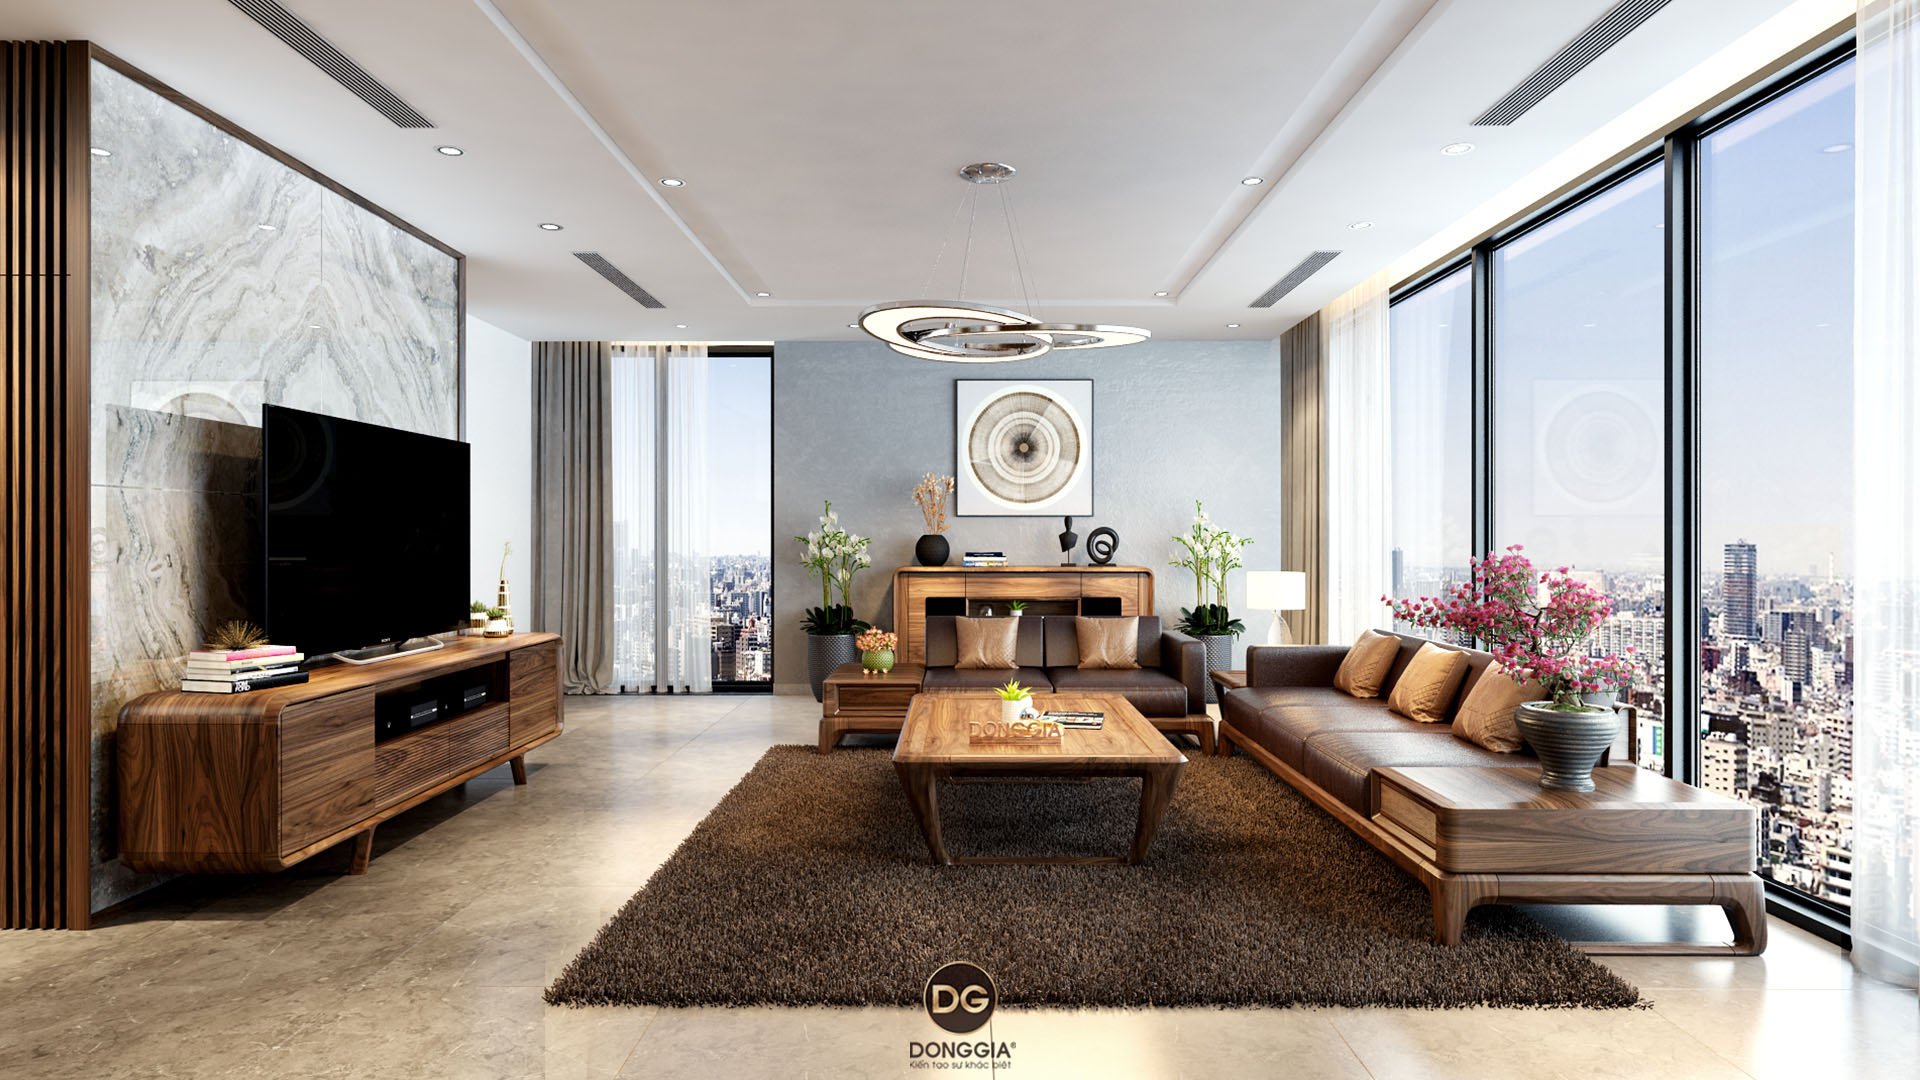 Phong cách hiện đại - xu hướng nổi bật trong thiết kế căn hộ - Tạp chí Kiến  Trúc